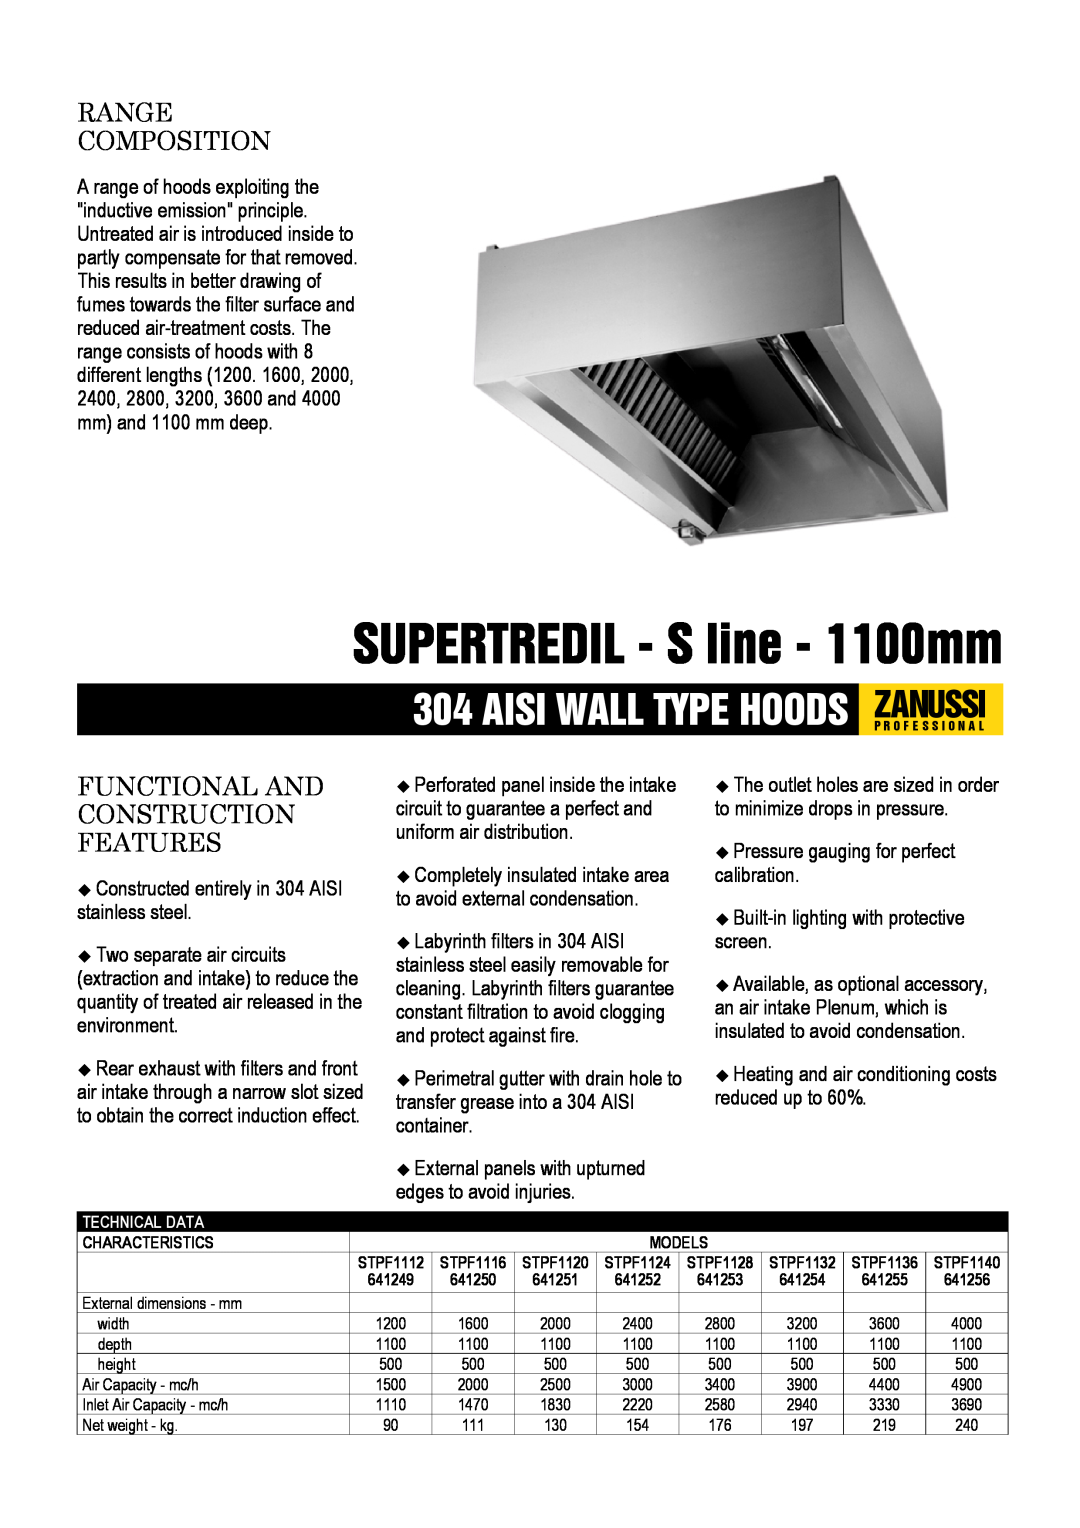 Zanussi STPF1136, 641254 dimensions SUPERTREDIL - S line - 1100mm, Aisi Wall Type Hoods Zanussip R O F E S S I O N A L 